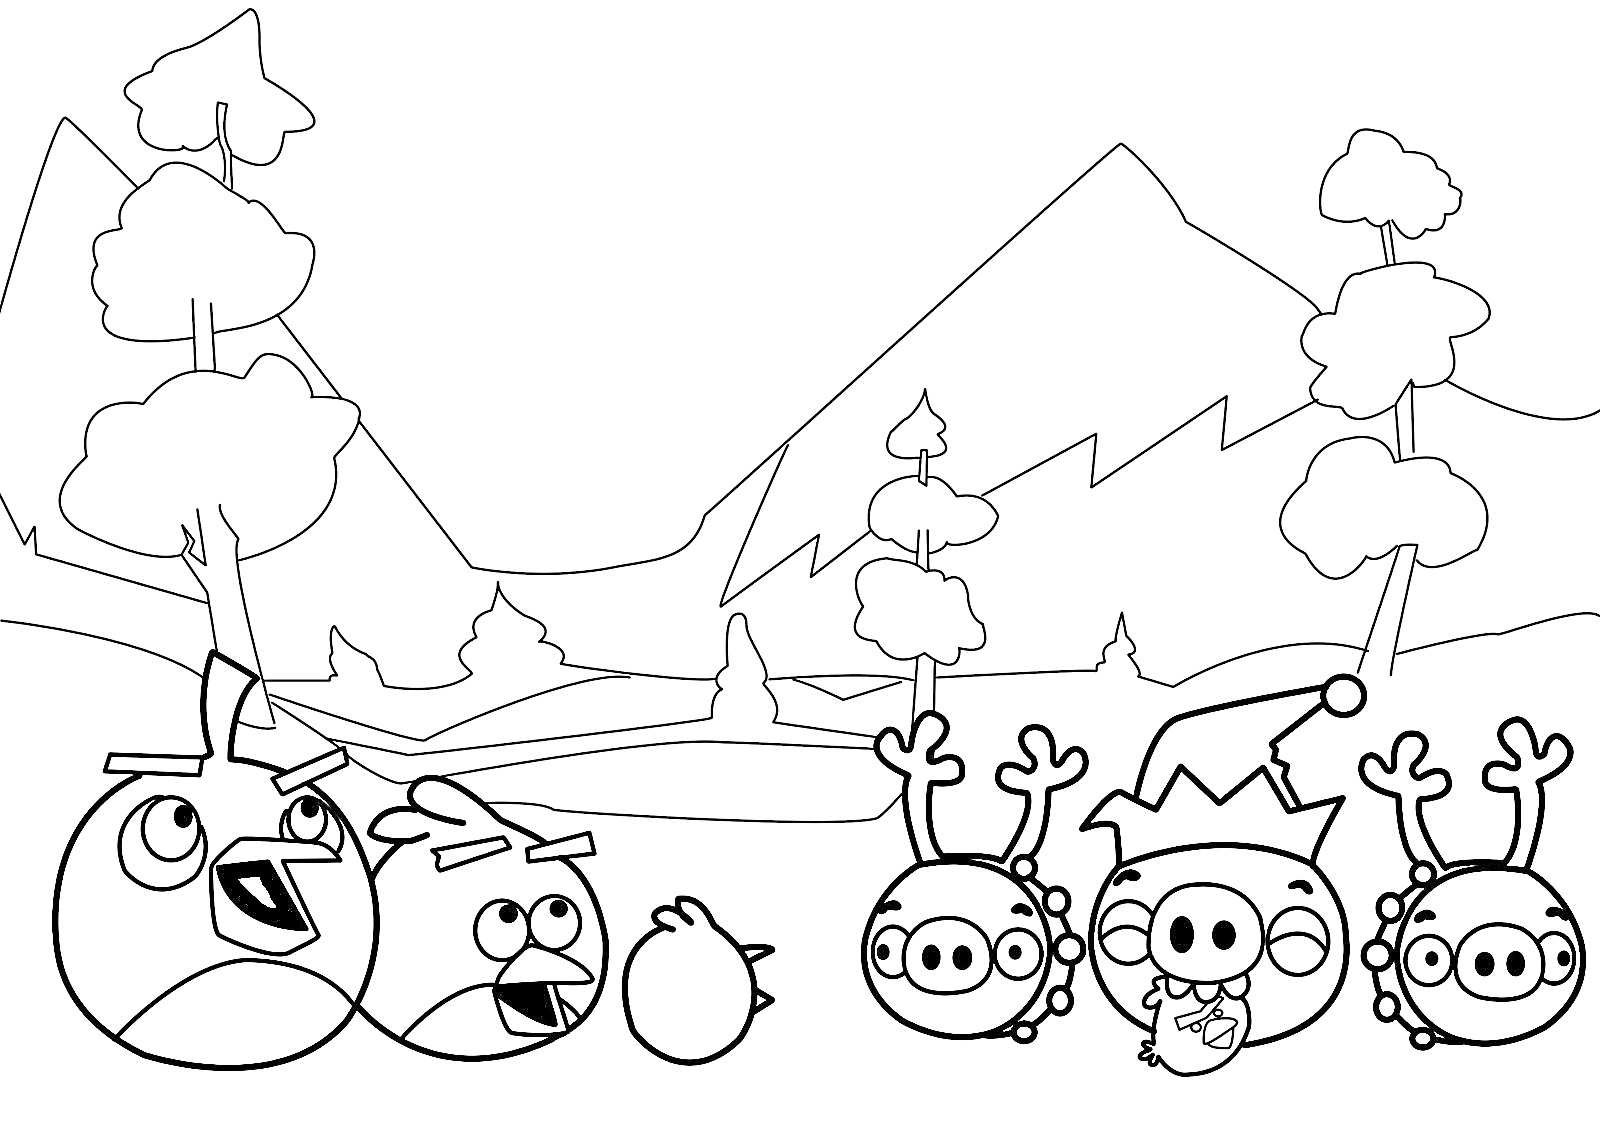 Раскраска Птички и свиньи из Энгри Бердс на фоне гор и леса, с элементами ёлок и снега